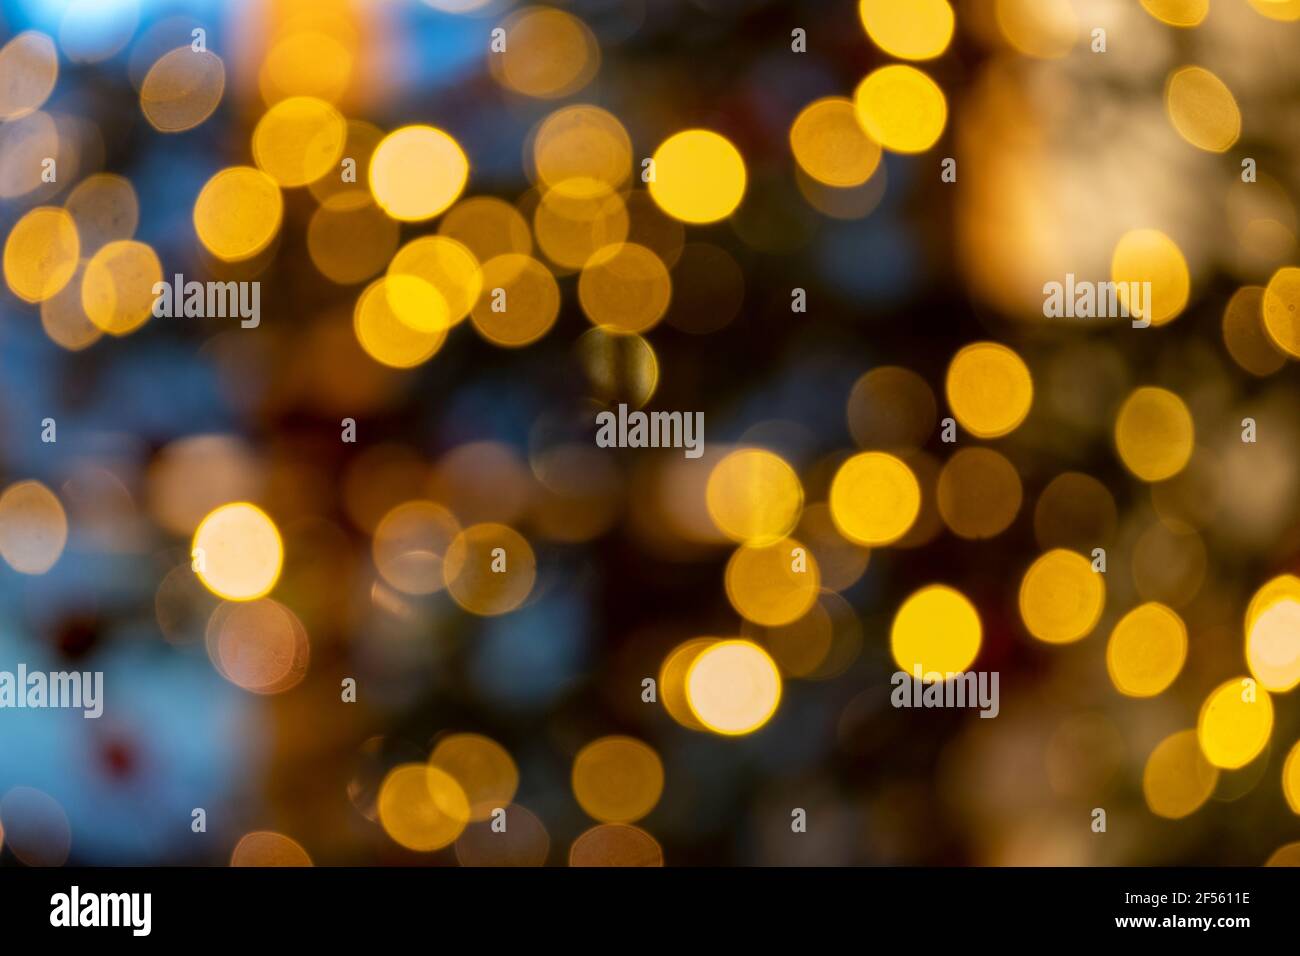 Christmas lights bokeh Stock Photo